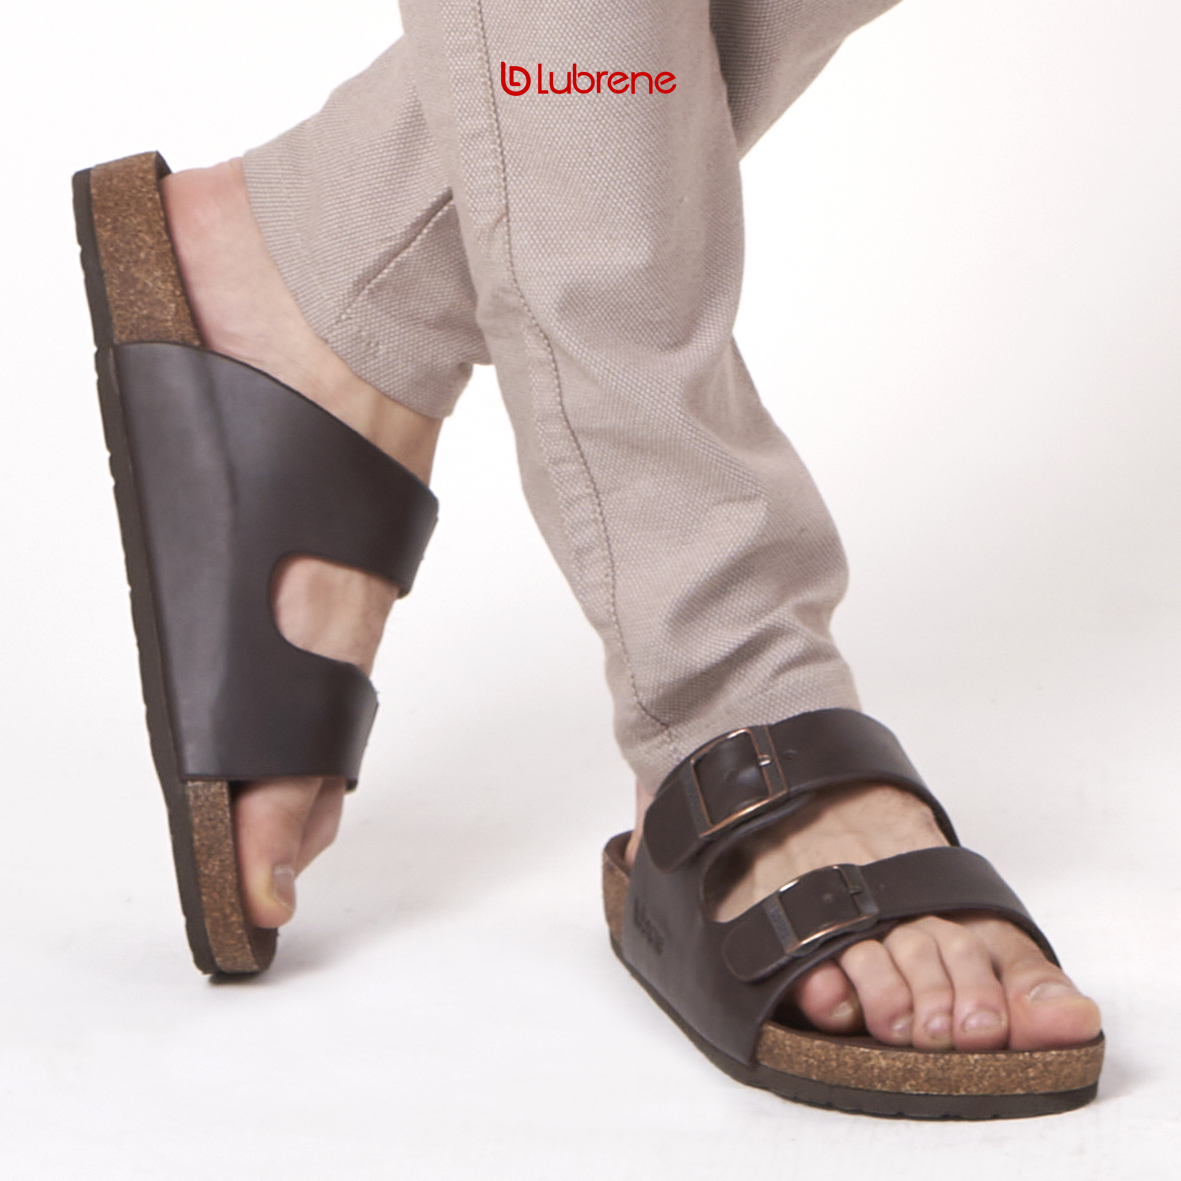 Jadikan setiap langkahmu lebih modis dan styles dengan sandal casual LUBRENE.

Cari alas kaki.?? LUBRENE aja.!!#lubrene #sandal #sandalkasualpria #sandalcasual #sandalpria #sandalmurah #sandalselop #sandaljepit #sandalslipon #sandalkasual #sandalkasualmurah